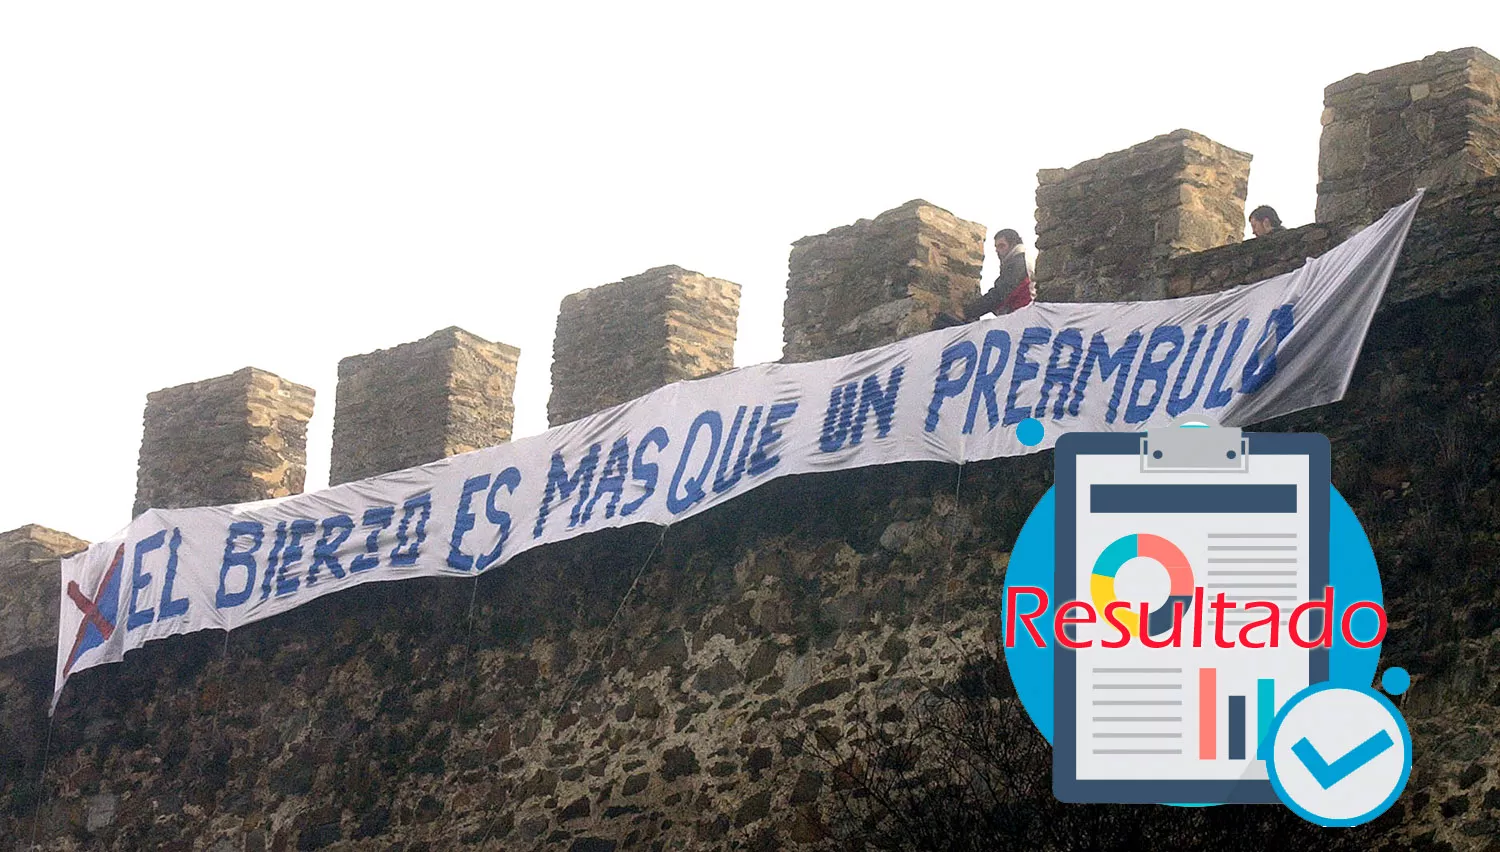 López / ICAL . Miembros del Partido de El Bierzo despliegan pancartas en el castillo de los Templarios de Ponferrada en contra del preámbulo referente a la comarca de El Bierzo, inscrito en la reforma del Estatuto de la Autonomía de Castilla y León